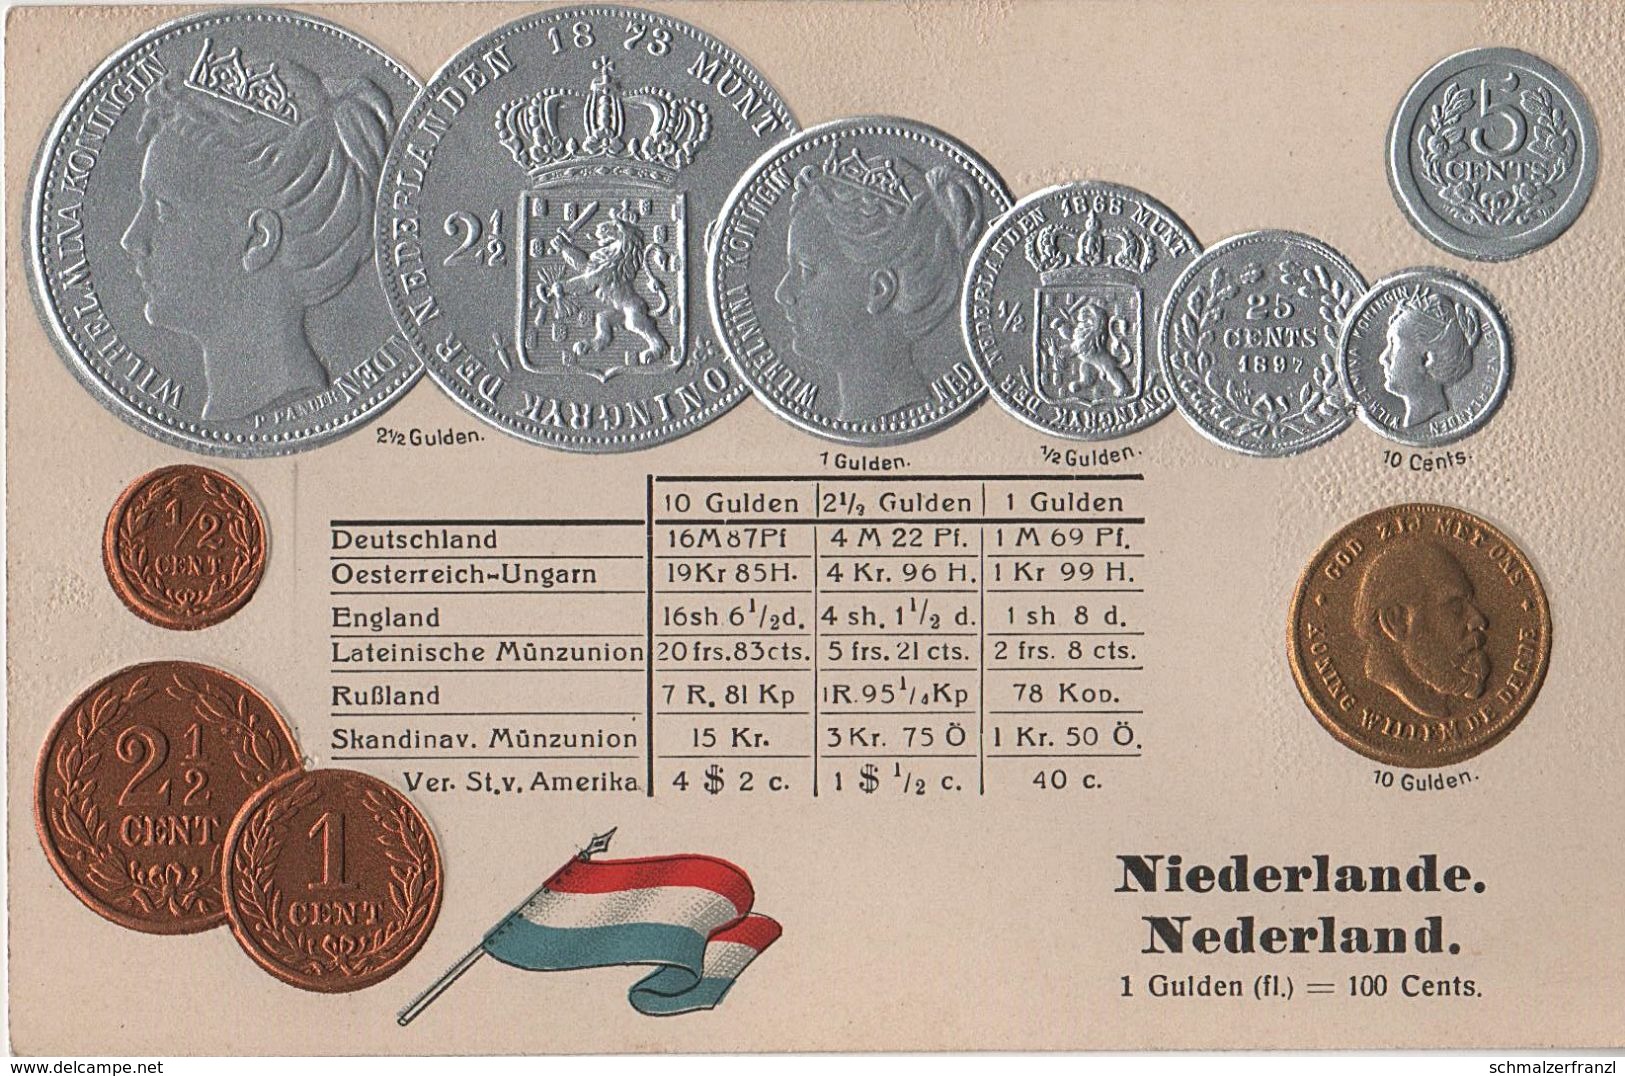 Litho Münzkarte AK Niederlande Nederland Netherlands Pays Bas Gulden Guilder Florin 1868 König Nationalflagge Coin Pièce - Monnaies (représentations)